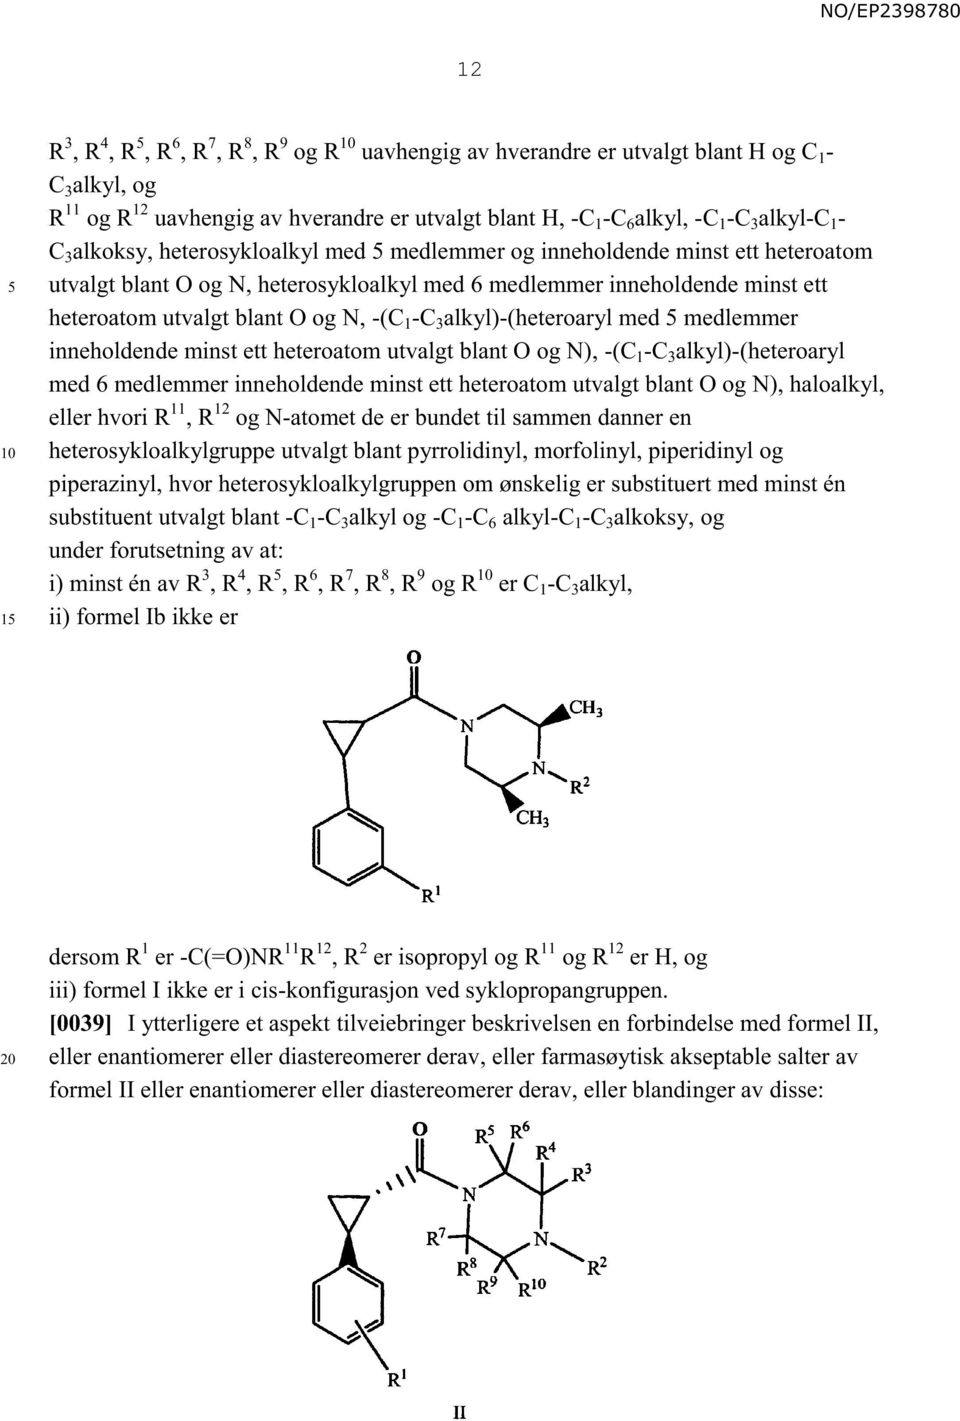 -C 3 alkyl)-(heteroaryl med medlemmer inneholdende minst ett heteroatom utvalgt blant O og N), -(C 1 -C 3 alkyl)-(heteroaryl med 6 medlemmer inneholdende minst ett heteroatom utvalgt blant O og N),